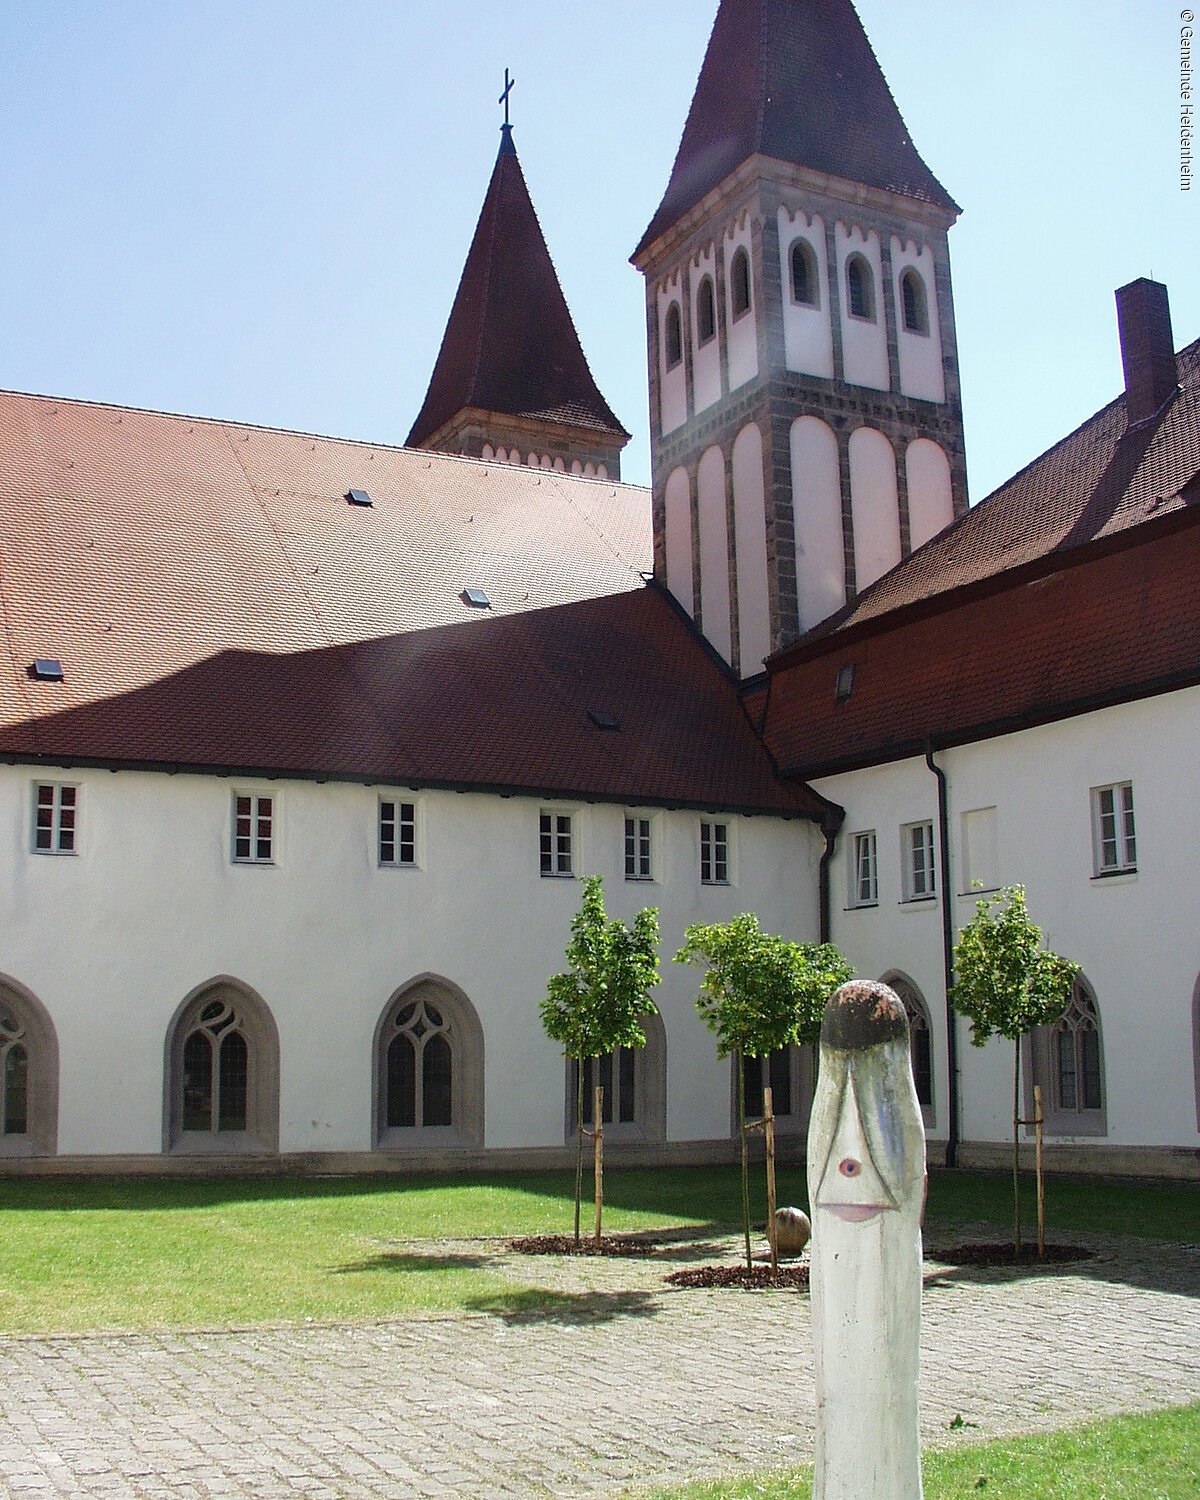 Heidemheimer Kloster